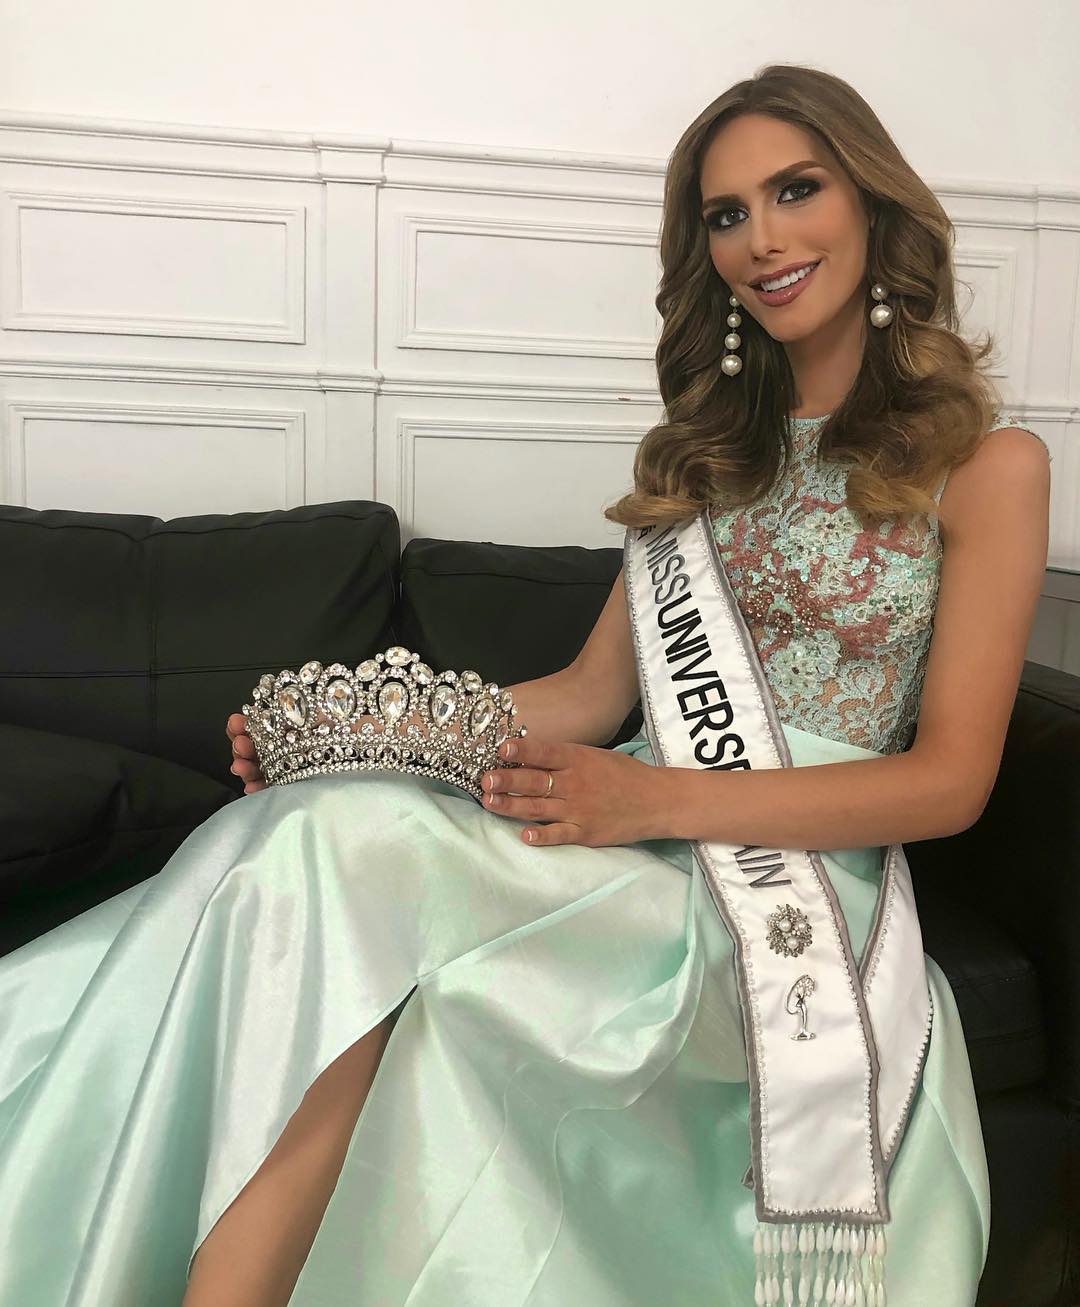 Mujer transexual va tras la corona de Miss Universo 2018